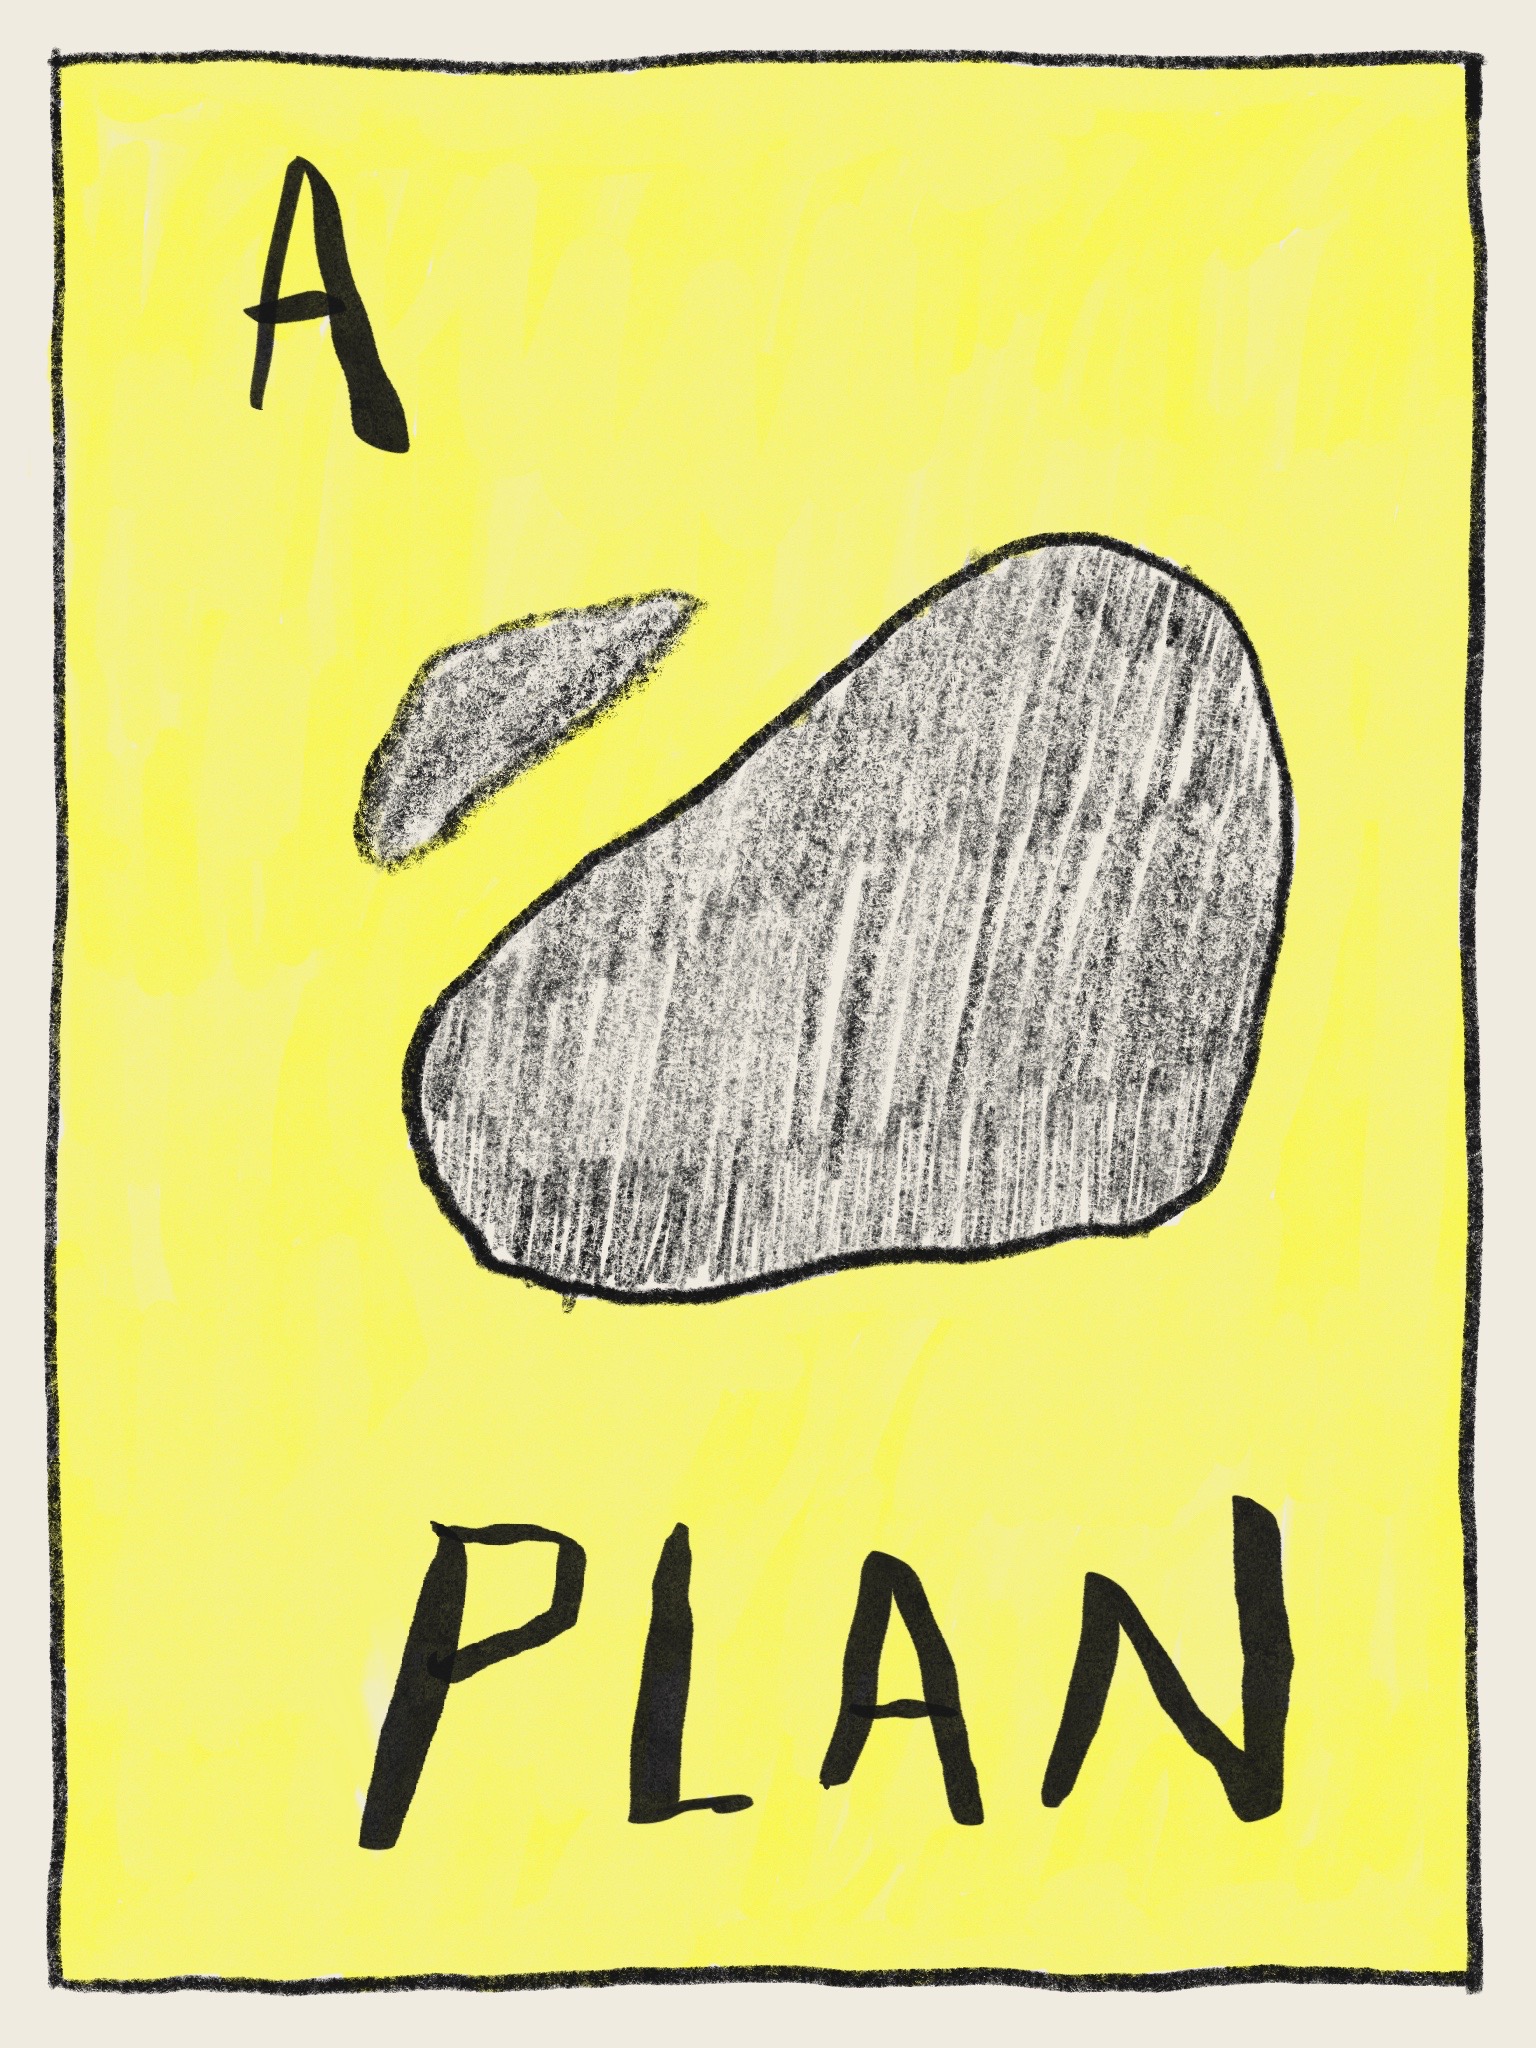 A Plan